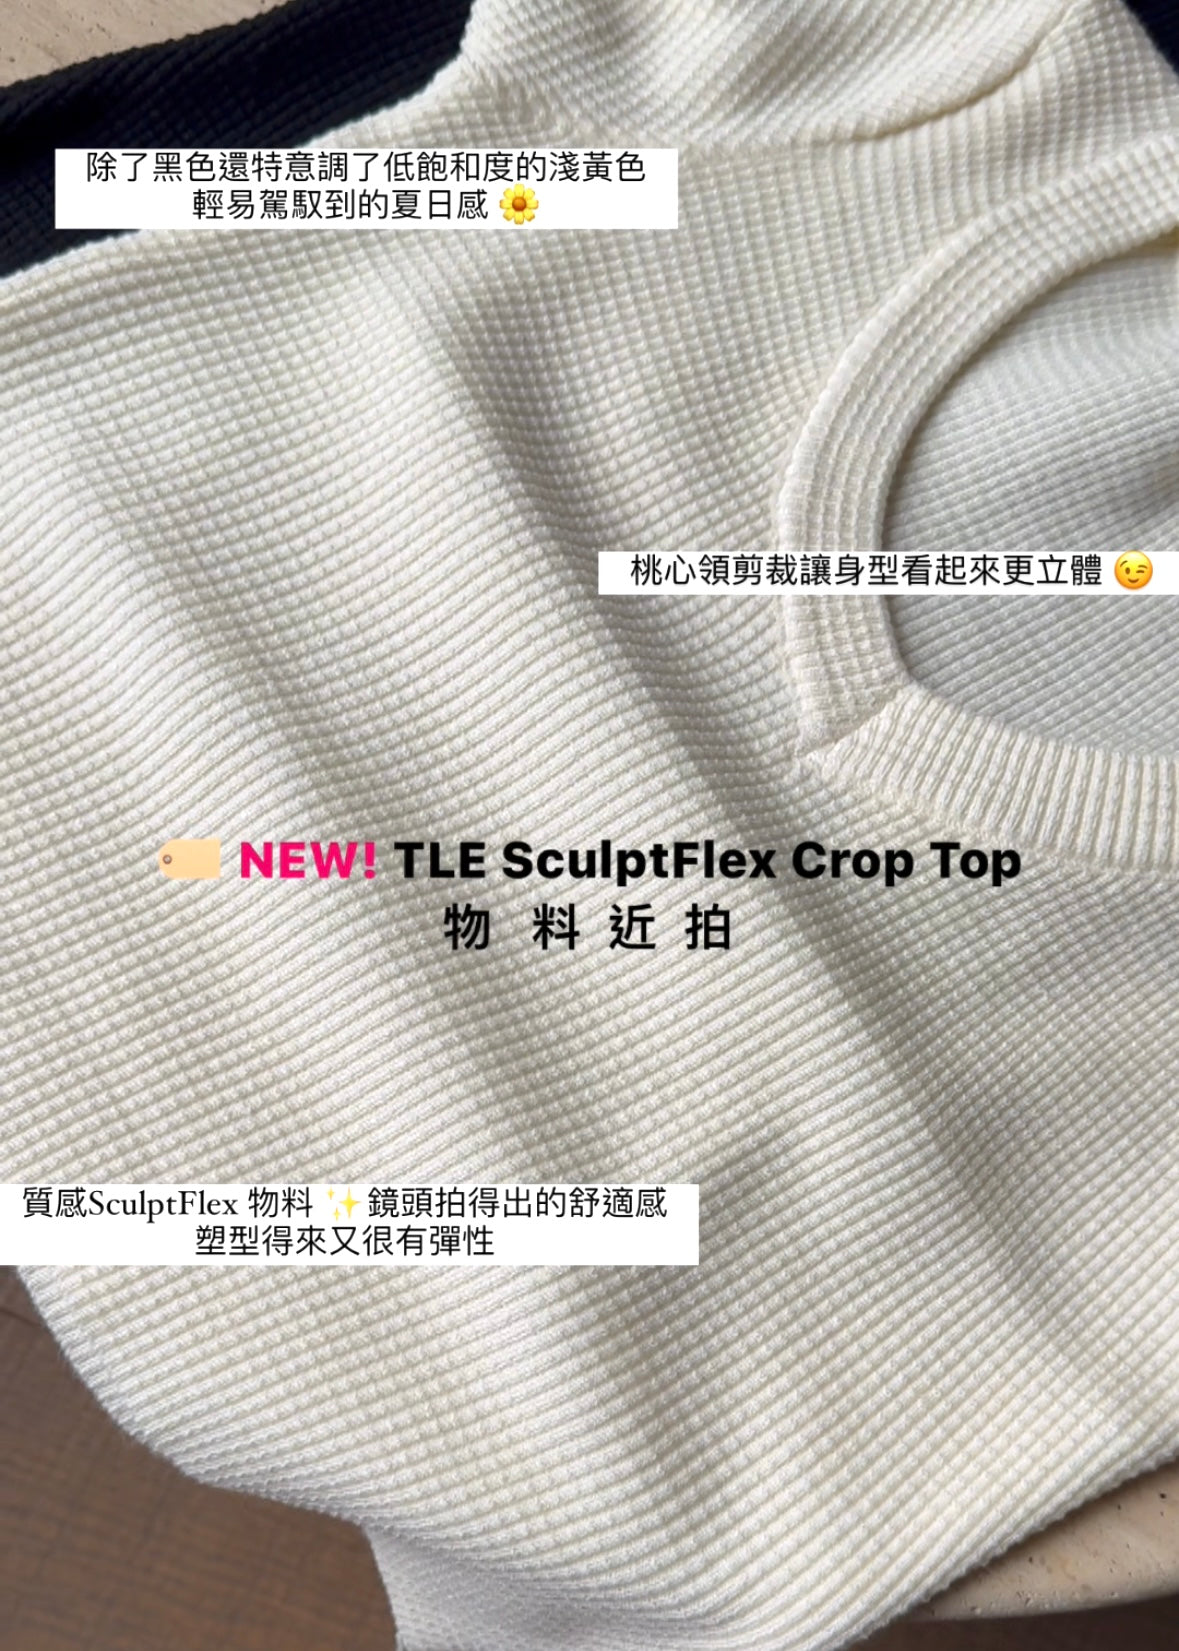 TLE ScultpFlex Crop Top